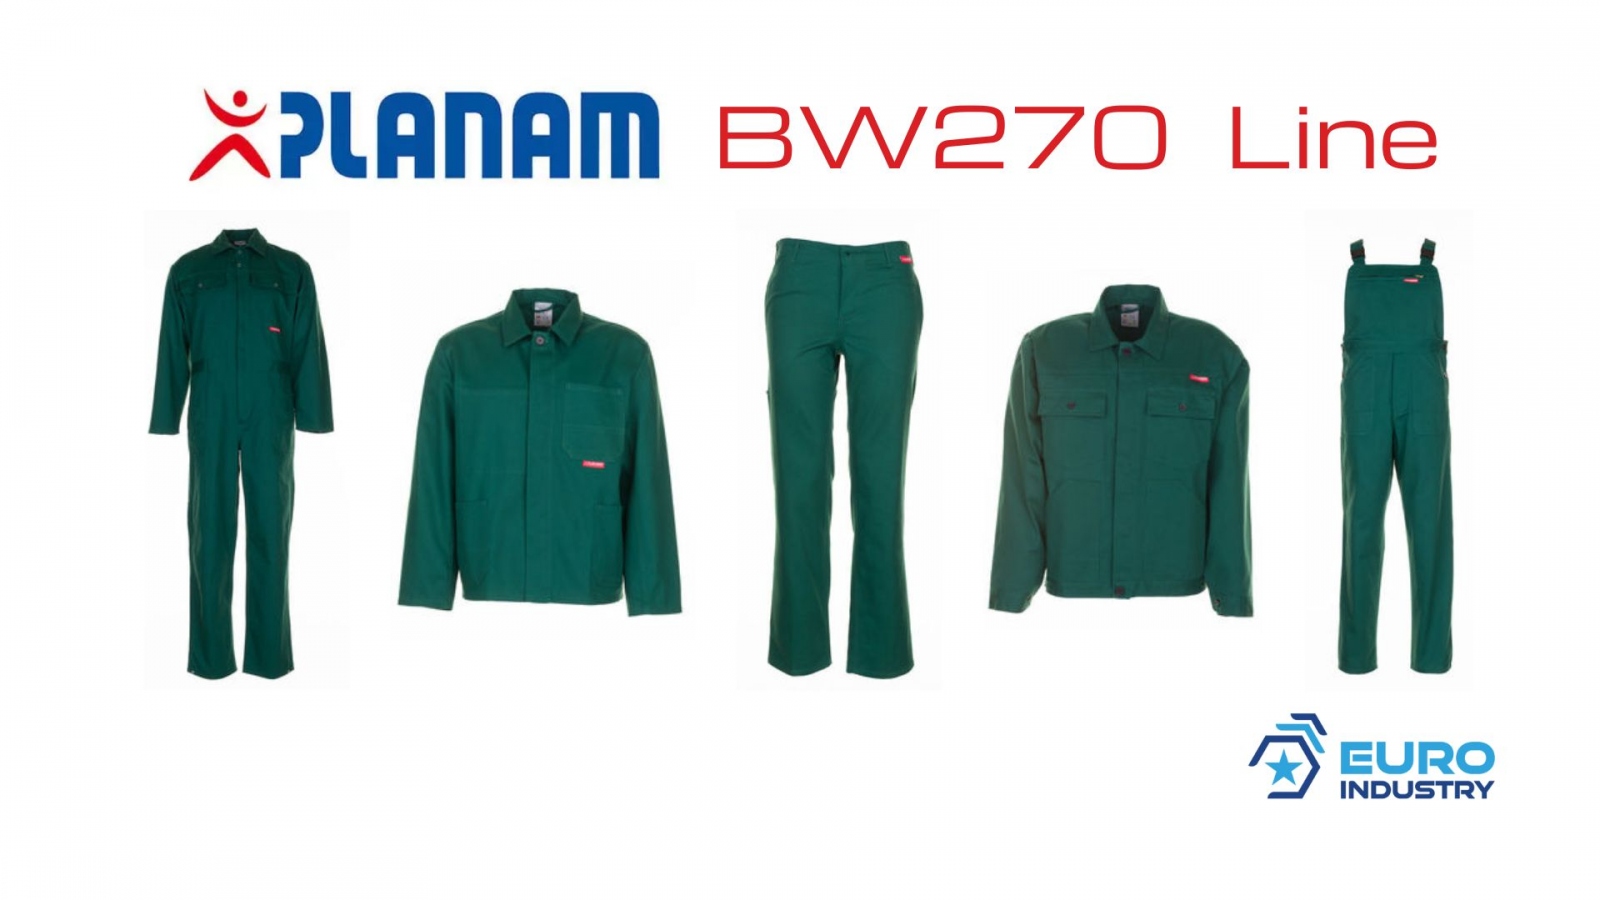 pics/Planam/1553/planam-bw-270-linie-mittelgruen-baumwolle-details.jpg